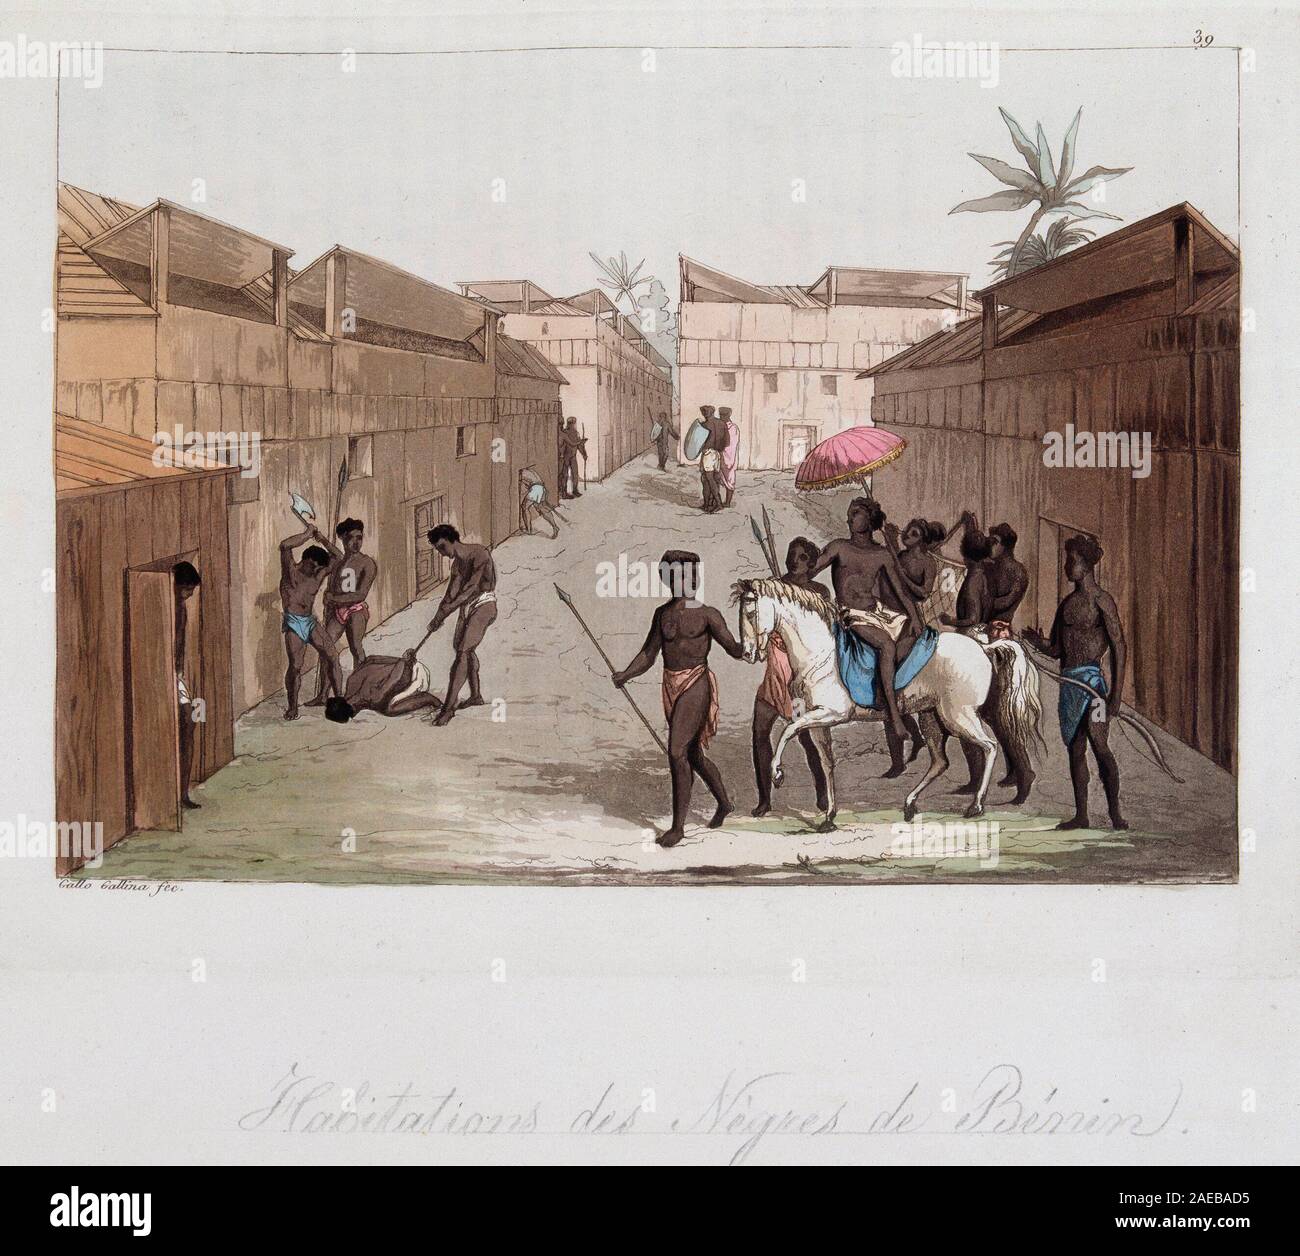 Habitation des negres du Benin (ancien Dahomey) (scene de rue) - in "Le costume ancien et moderne" par Ferrario, ed Milan, 1819-20 ©/ Stock Photo